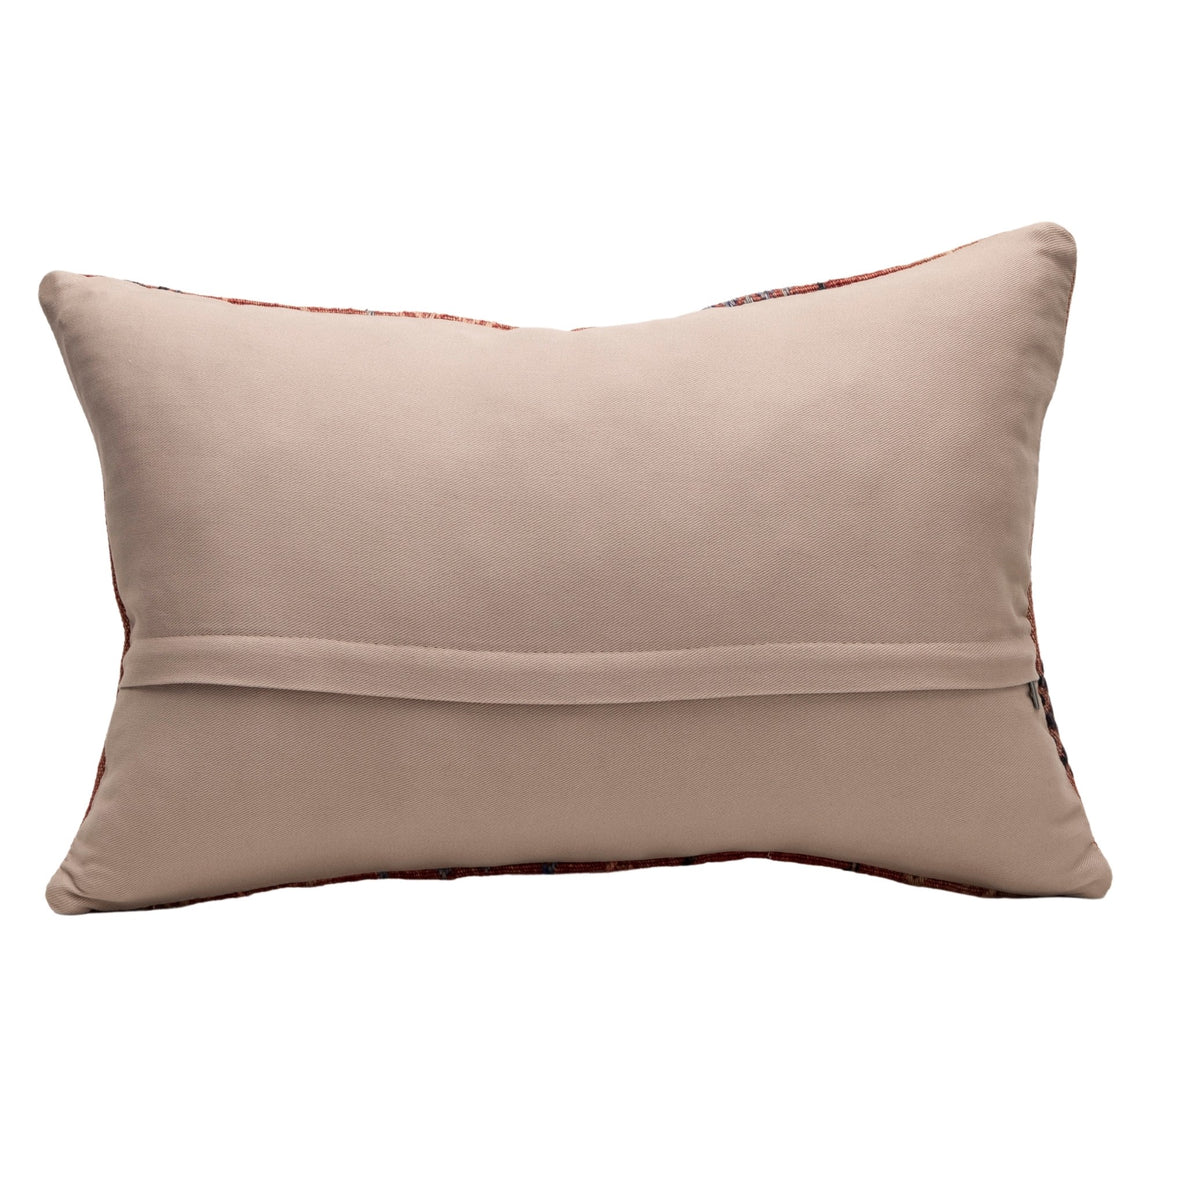 Oriental Geometric Kilim Throw Pillow Case 16" x 24"